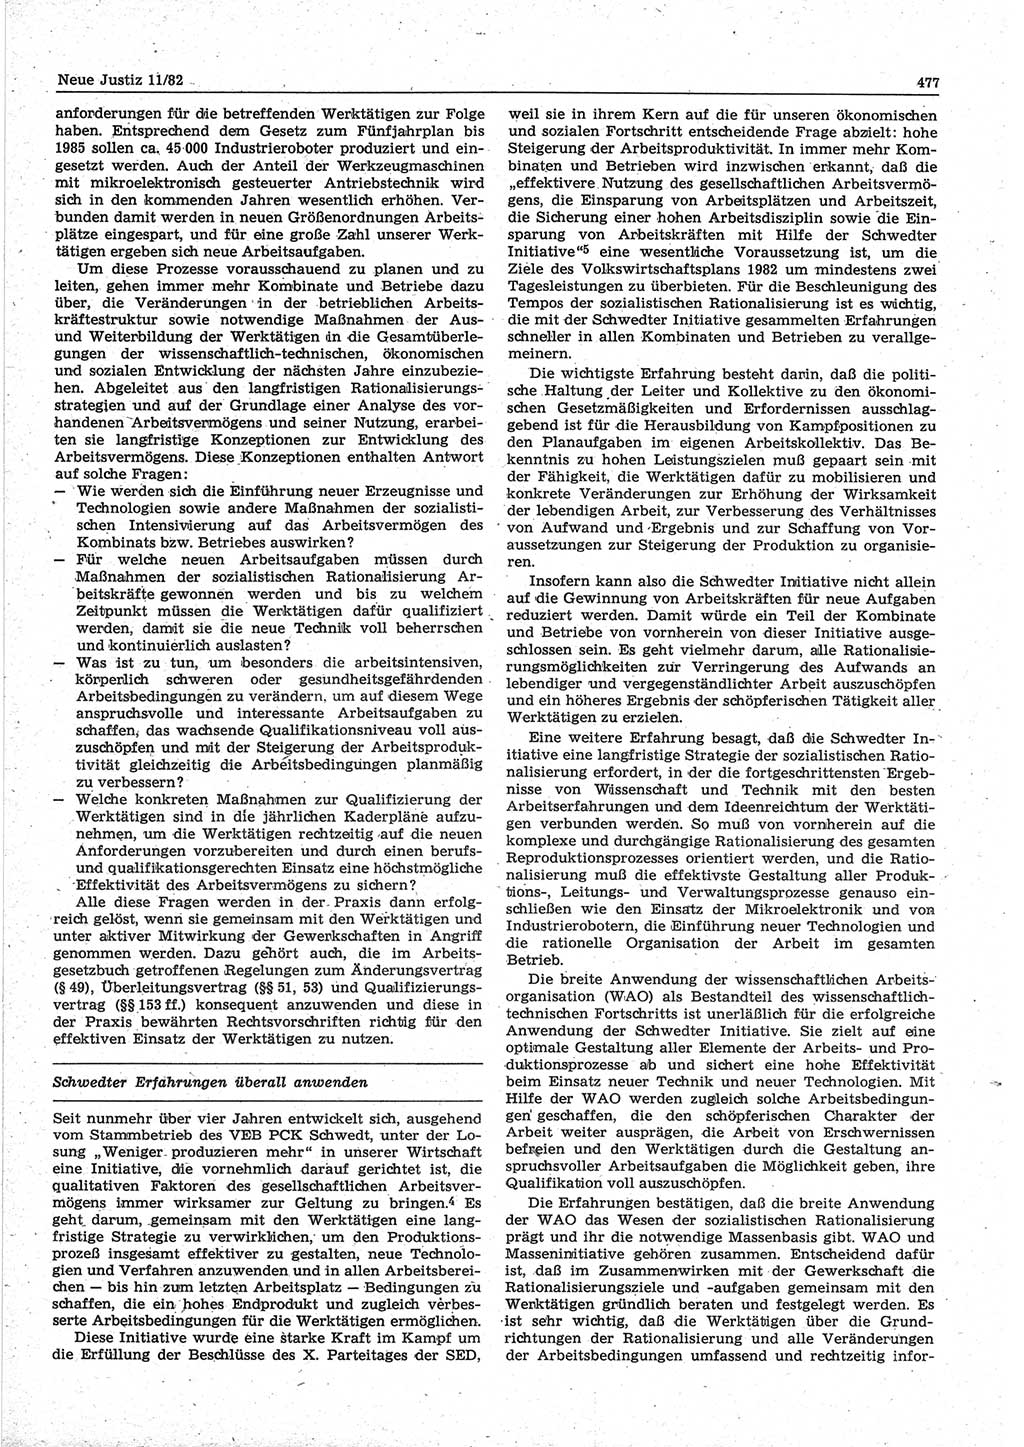 Neue Justiz (NJ), Zeitschrift für sozialistisches Recht und Gesetzlichkeit [Deutsche Demokratische Republik (DDR)], 36. Jahrgang 1982, Seite 477 (NJ DDR 1982, S. 477)